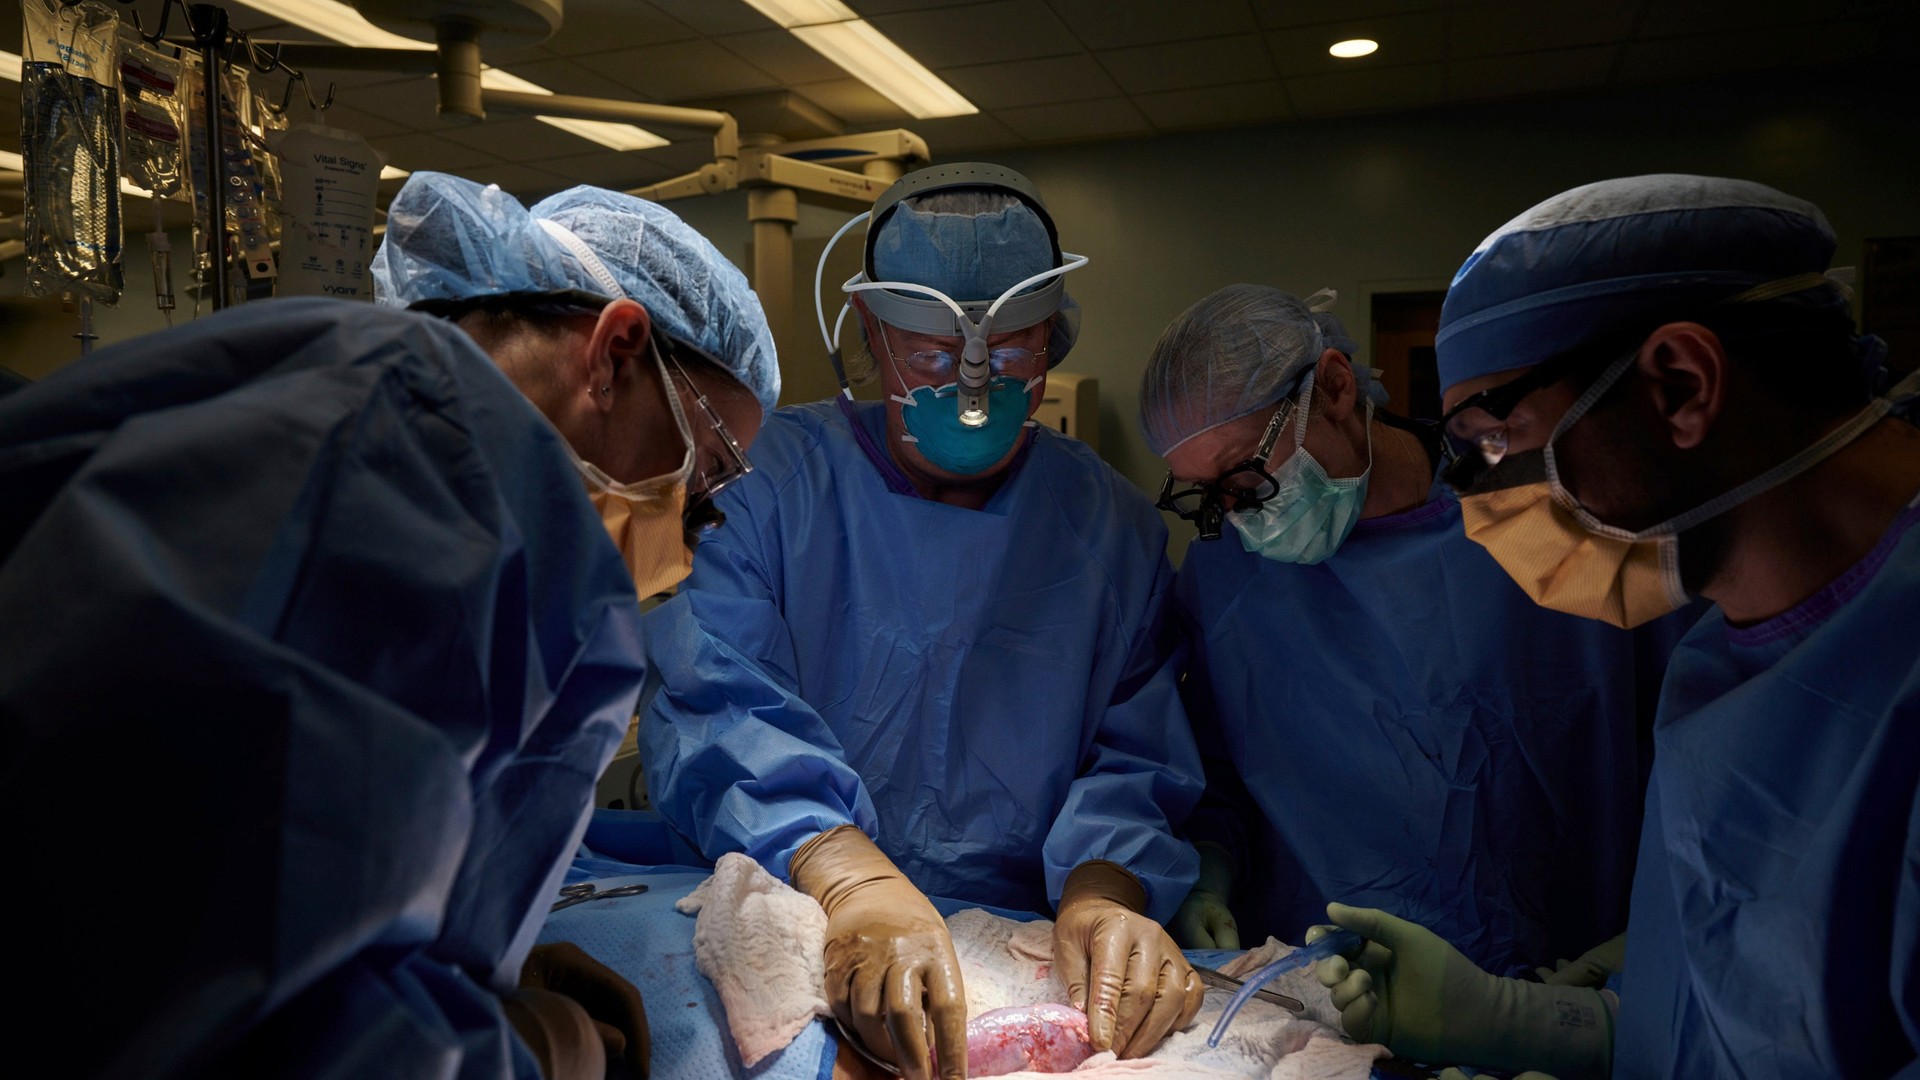 Mdicos realizam transplante de rins de porco em um humano